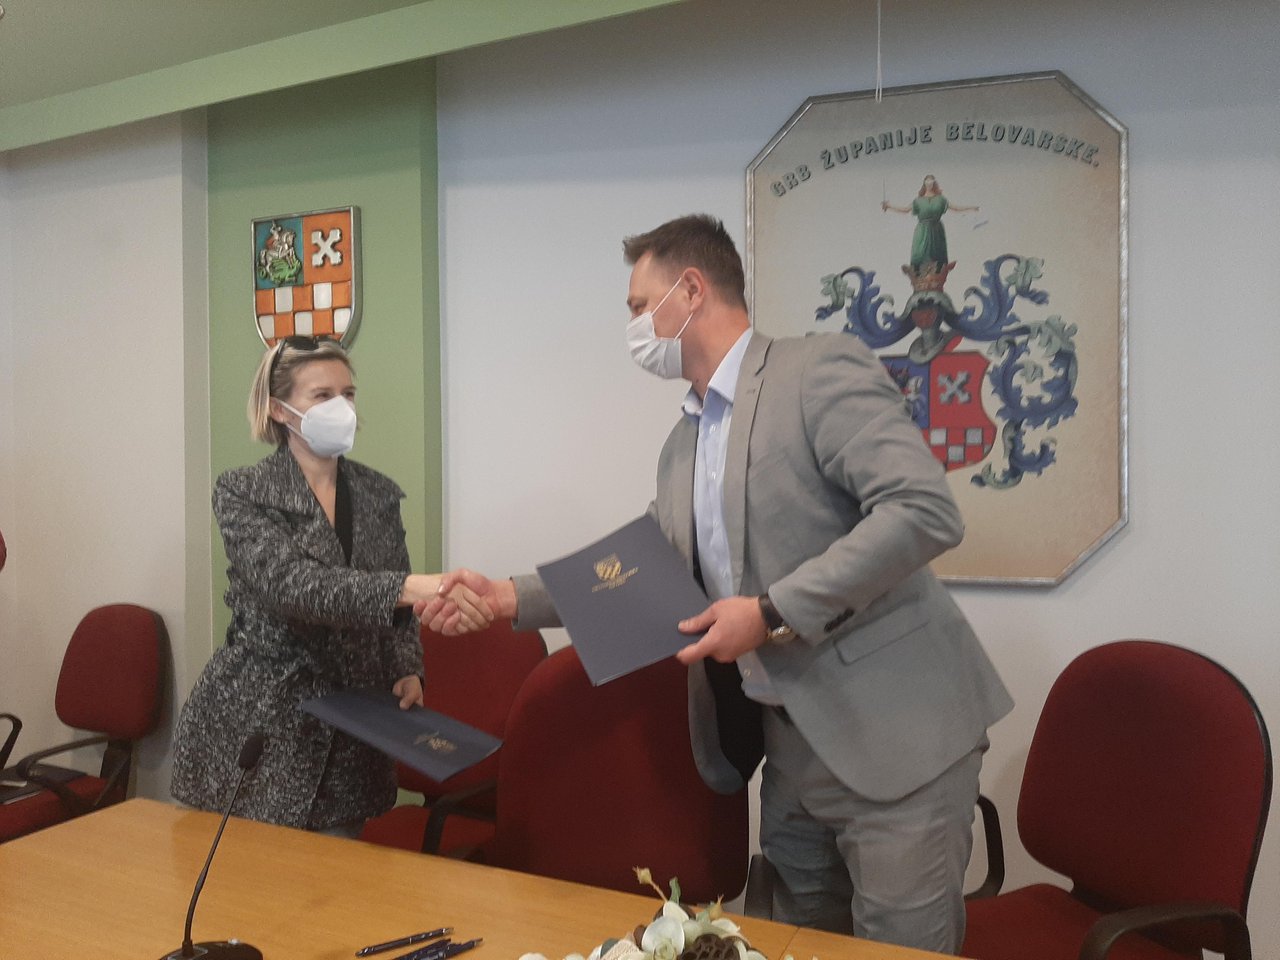 Fotografija: Danas je potpisano novih 16 ugovora o pomoći BBŽ zdravstvenim djelatnicima/Foto: MojPortal
